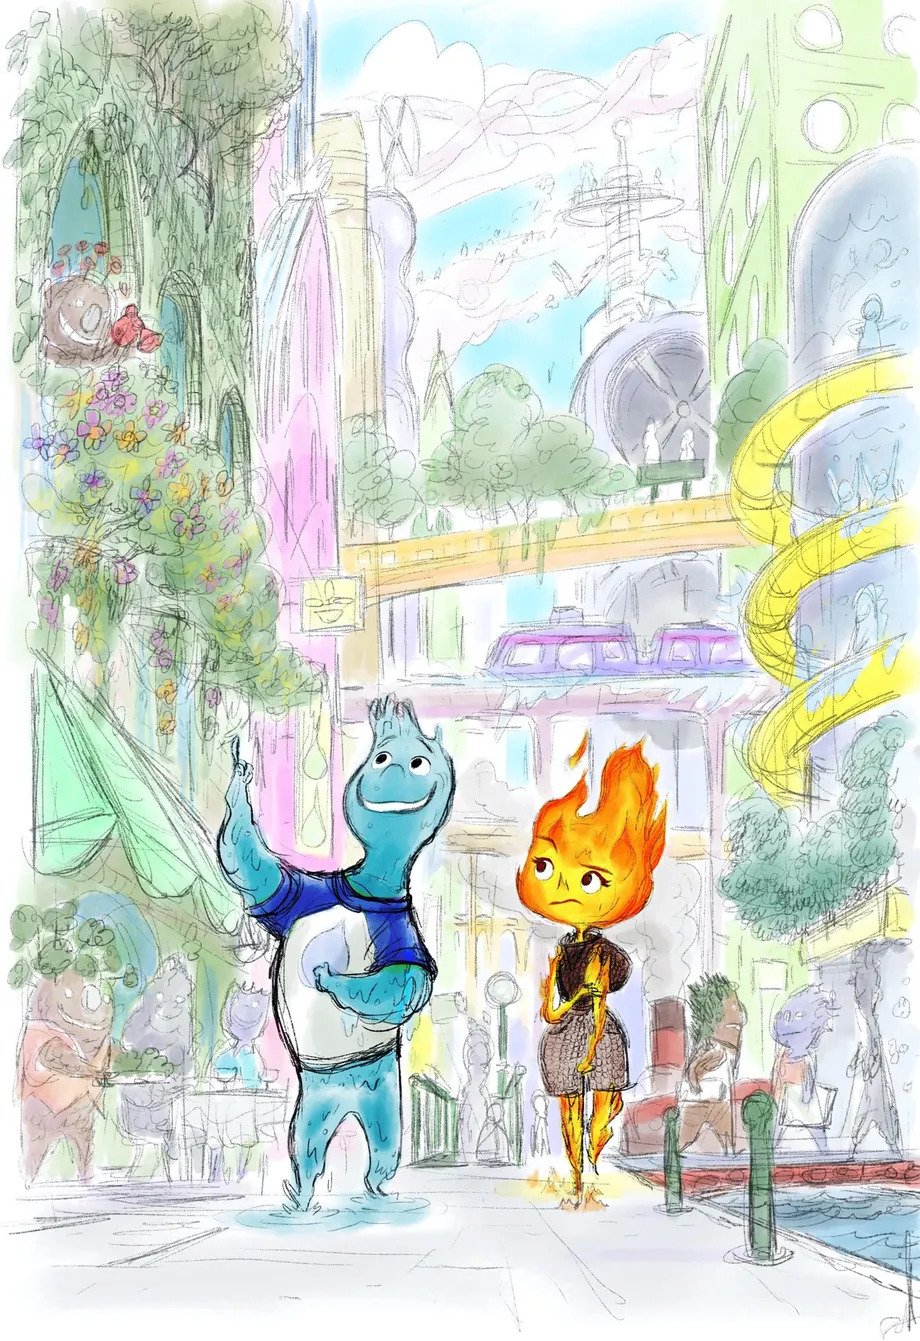 Elemental”: a Pixar a brincar com o fogo e a meter água, tudo ao mesmo  tempo – Observador